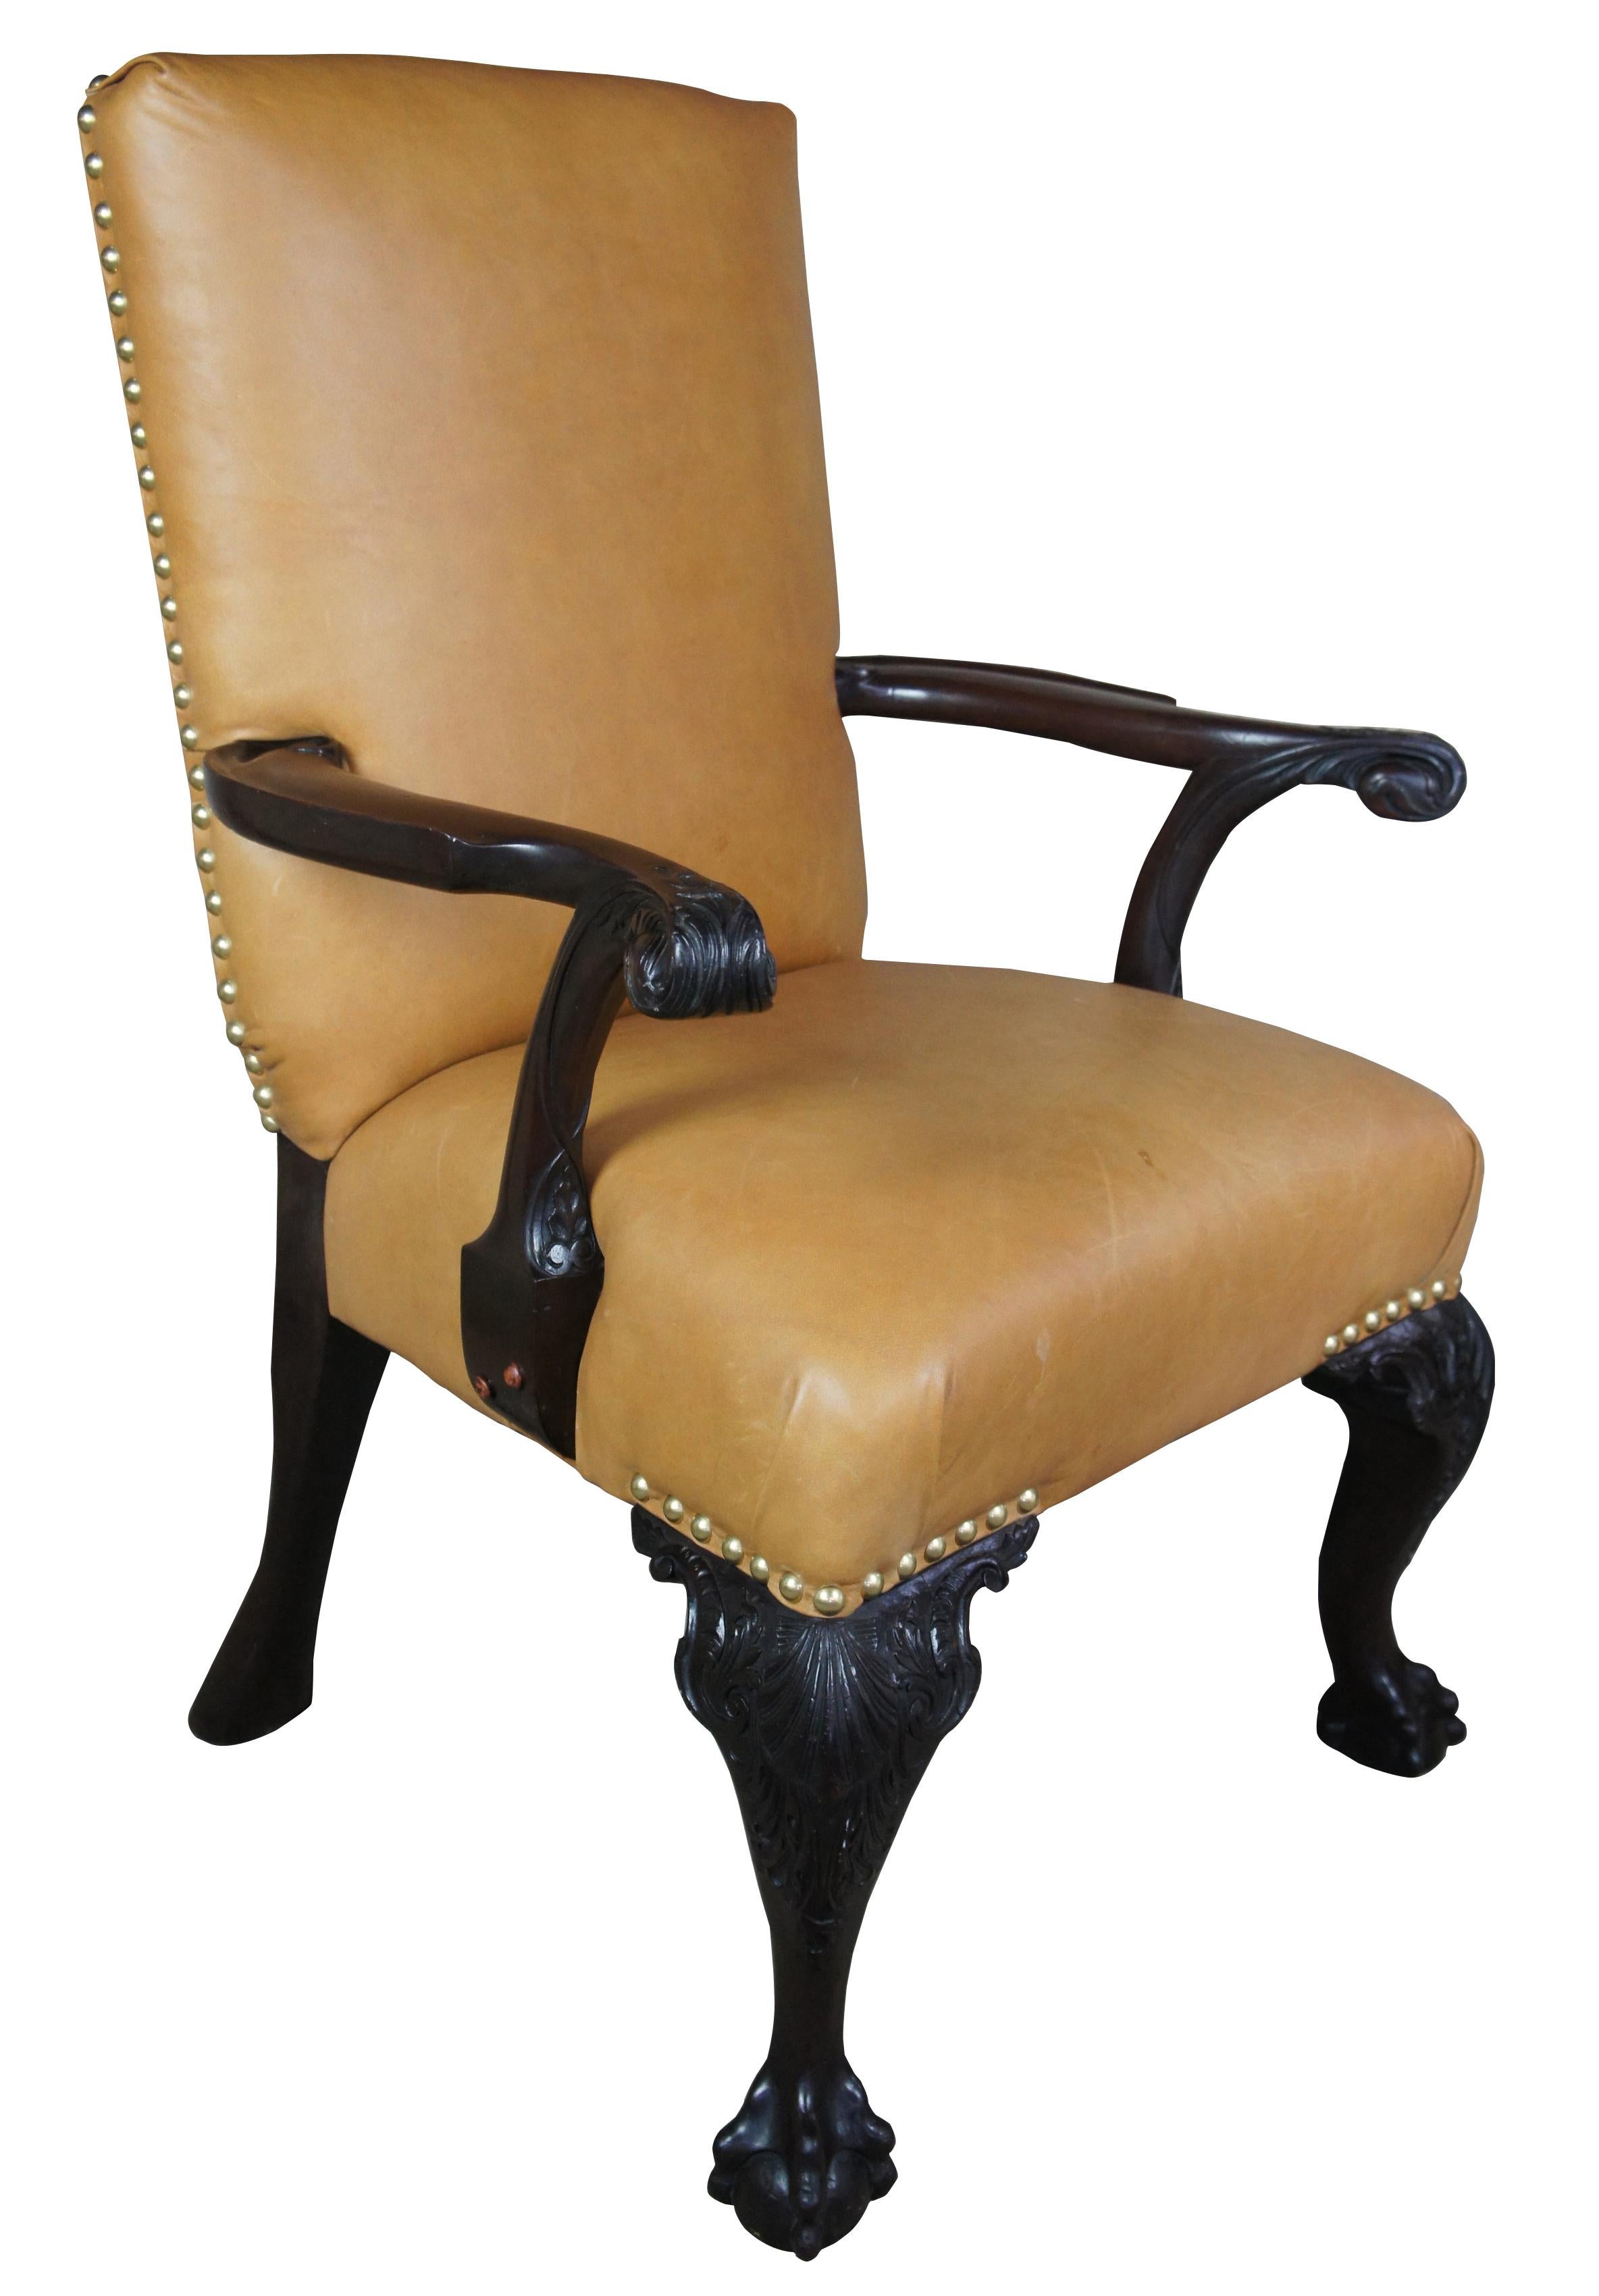 Ancien fauteuil Chippendale anglais du 19ème siècle en acajou sculpté avec cuir et griffes en forme de boule

Un magnifique fauteuil lourd de style Chippendale anglais. Fabriqué en acajou avec du cuir fauve et une garniture en tête de clou. Pieds